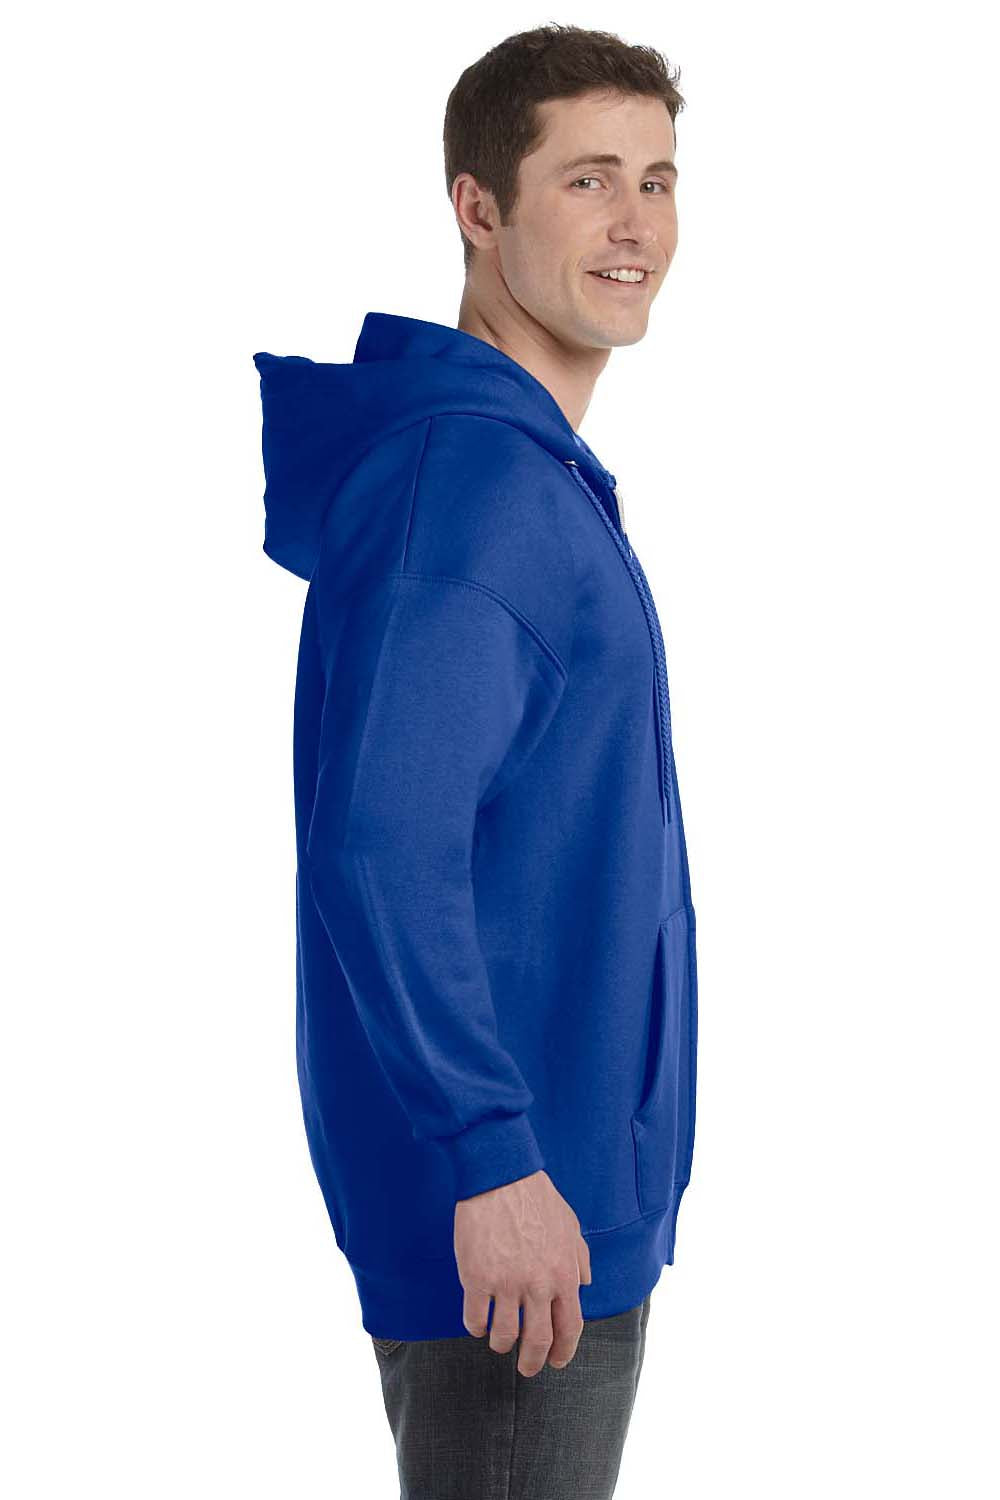 Hanes Men's Sweatshirts, Ultimate Men's Full-Zip Hoodie, Men's Zip